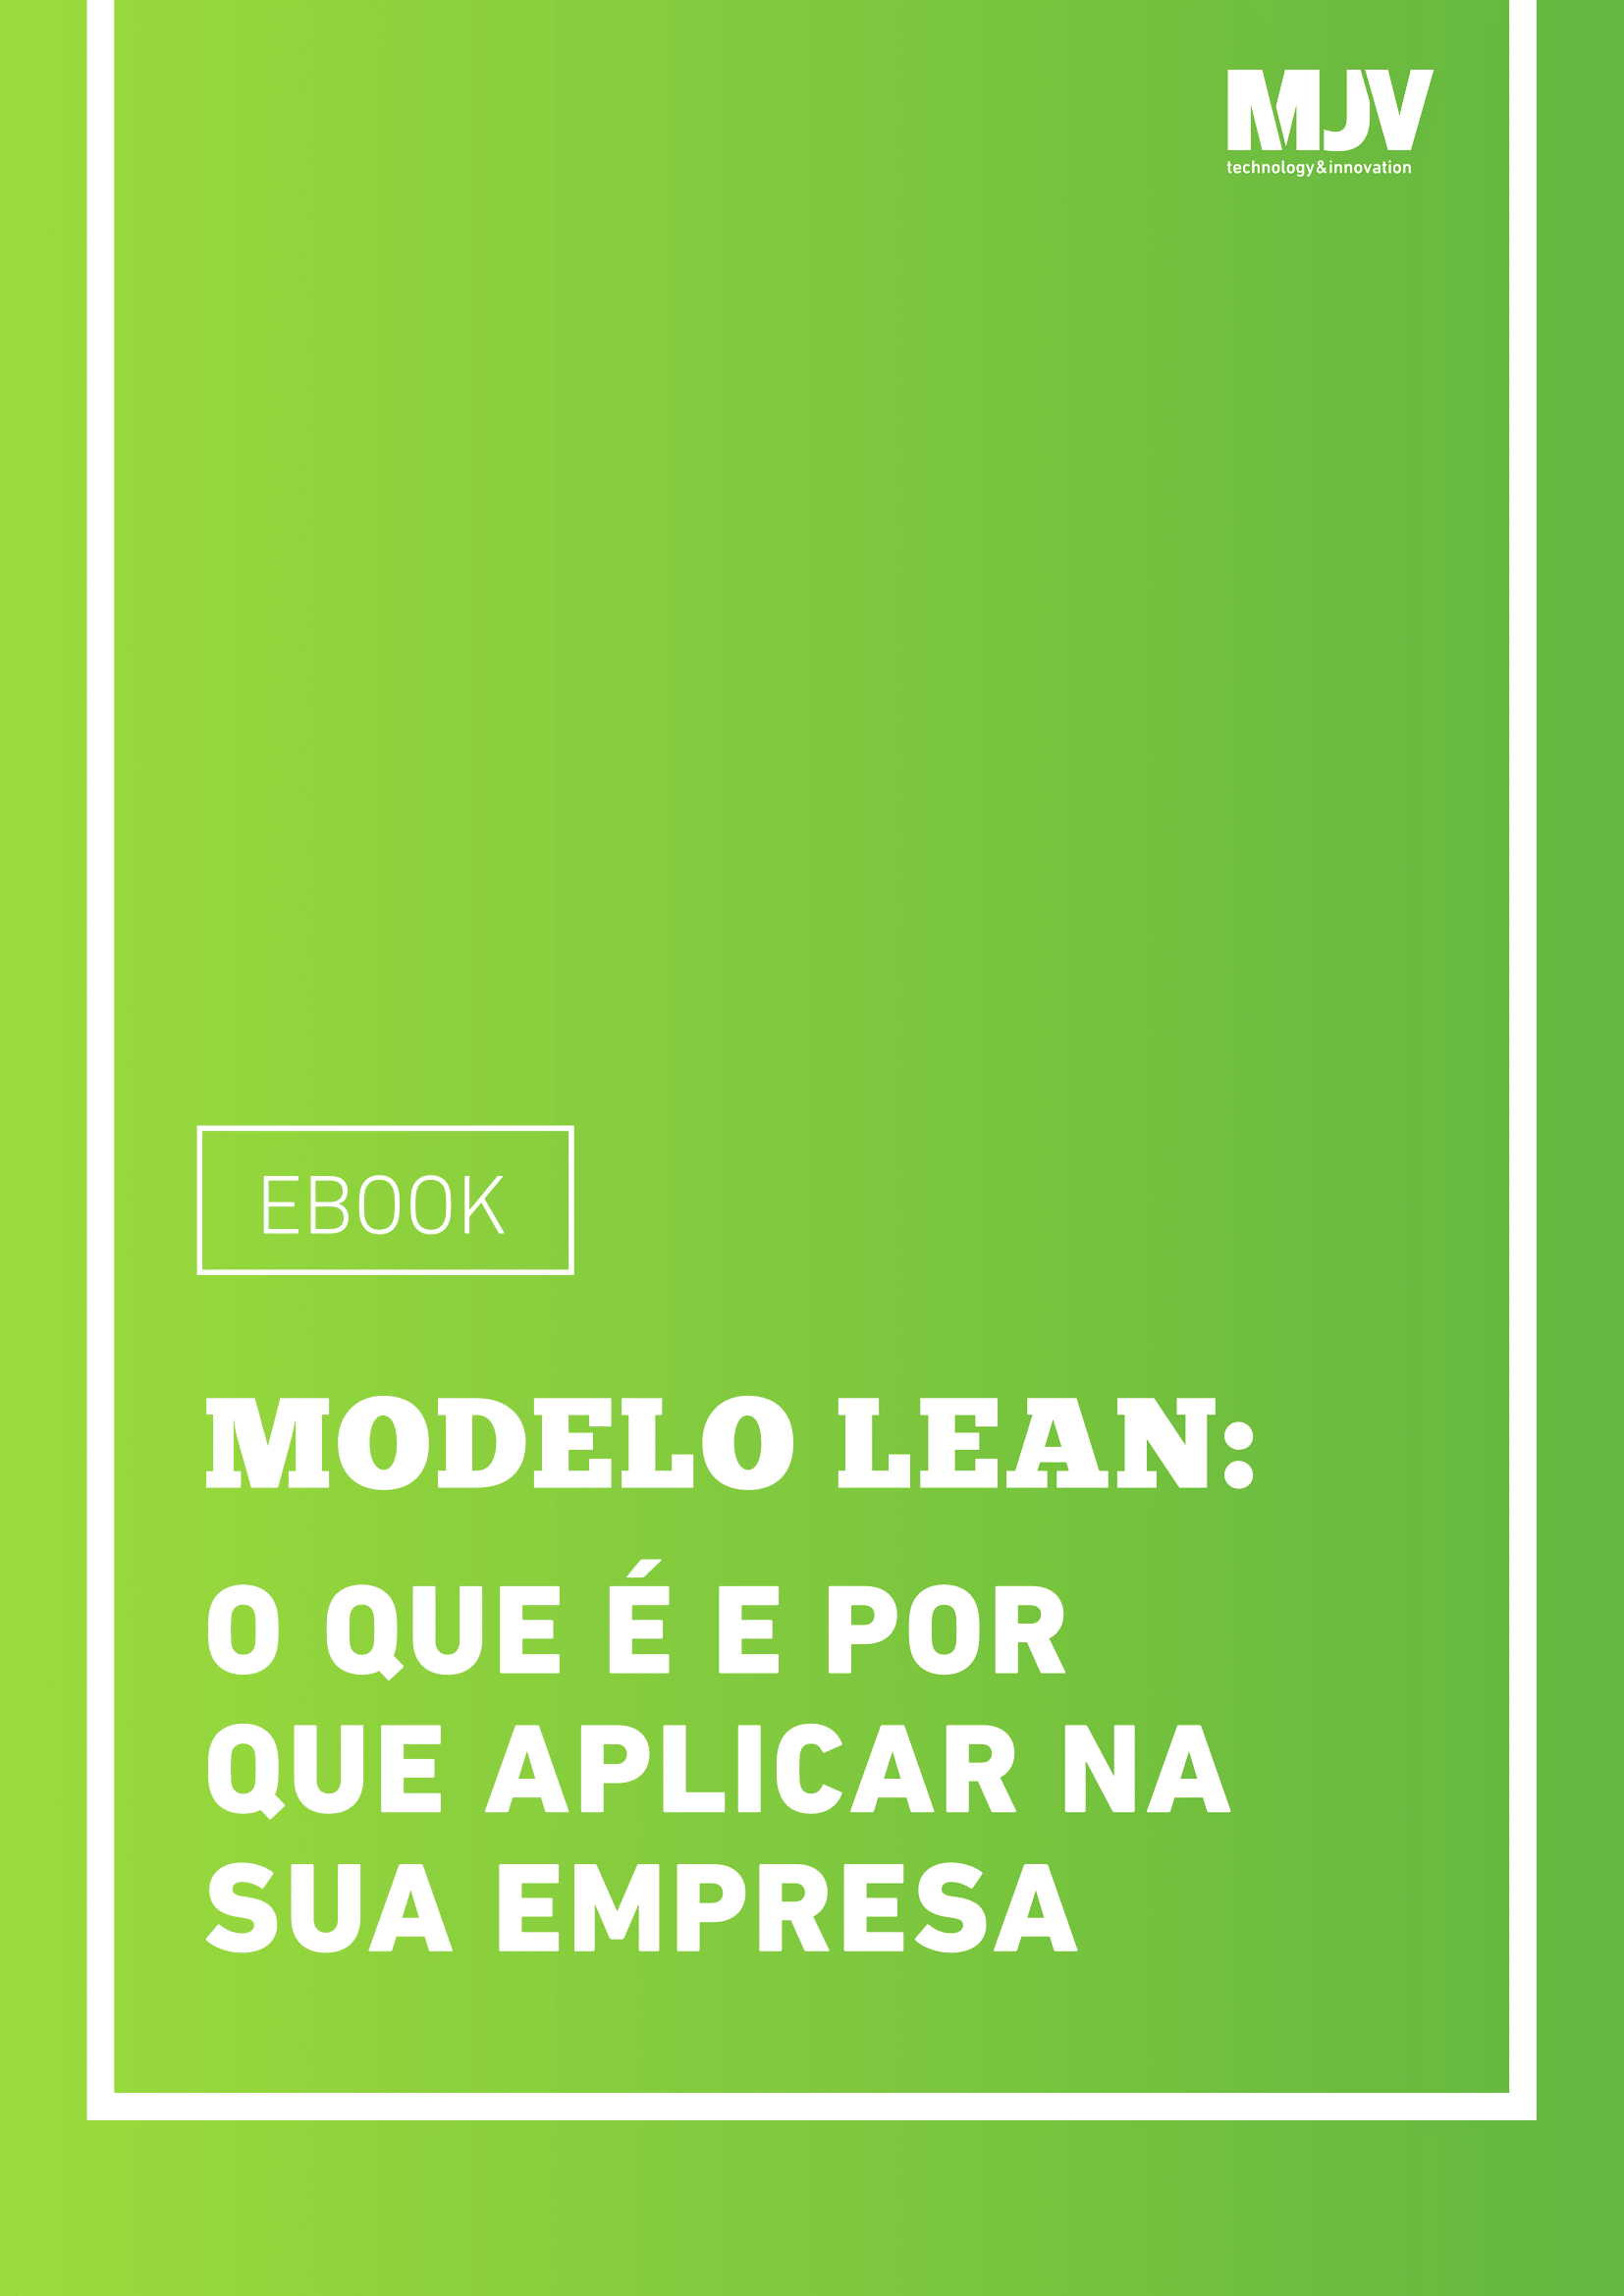 E-book-modelo-Lean-01